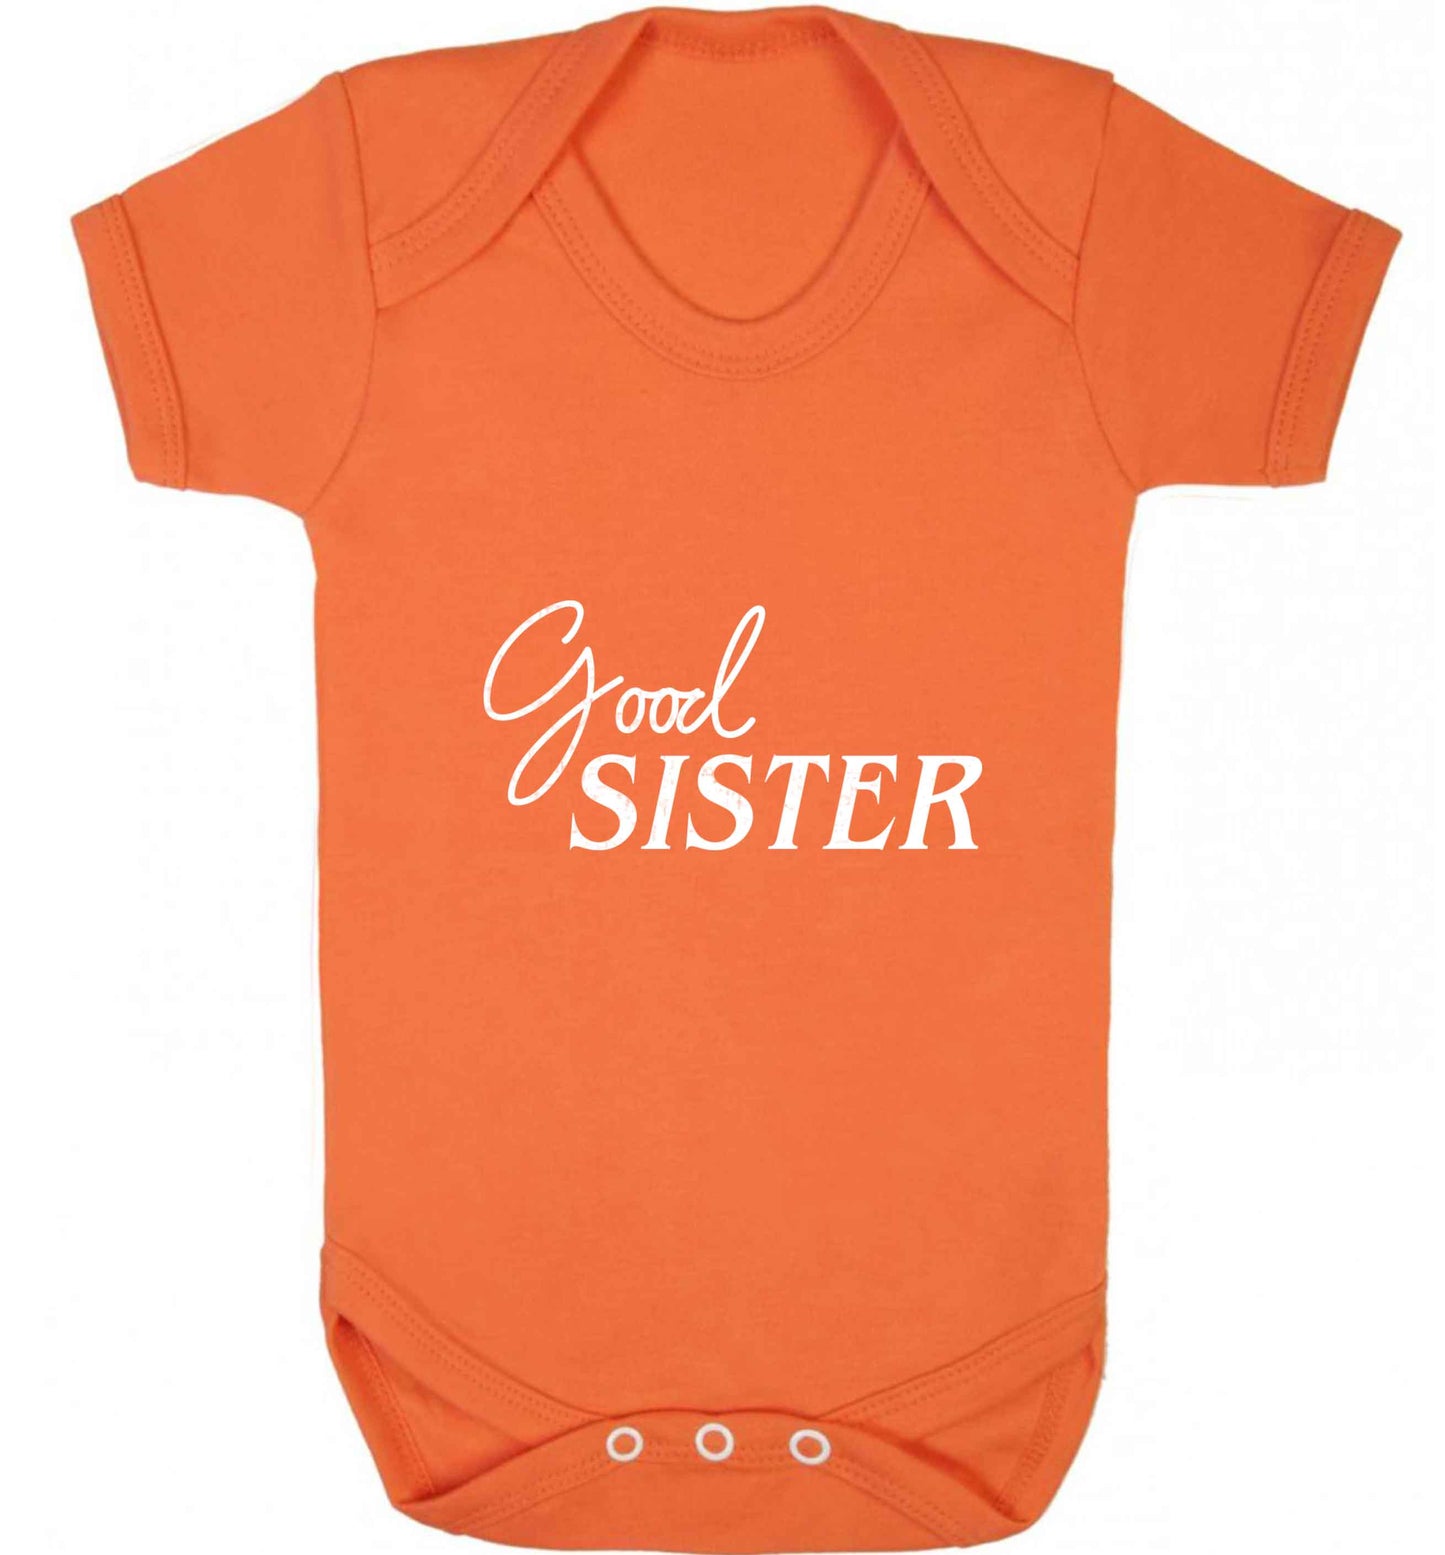 Good sister baby vest orange 18-24 months